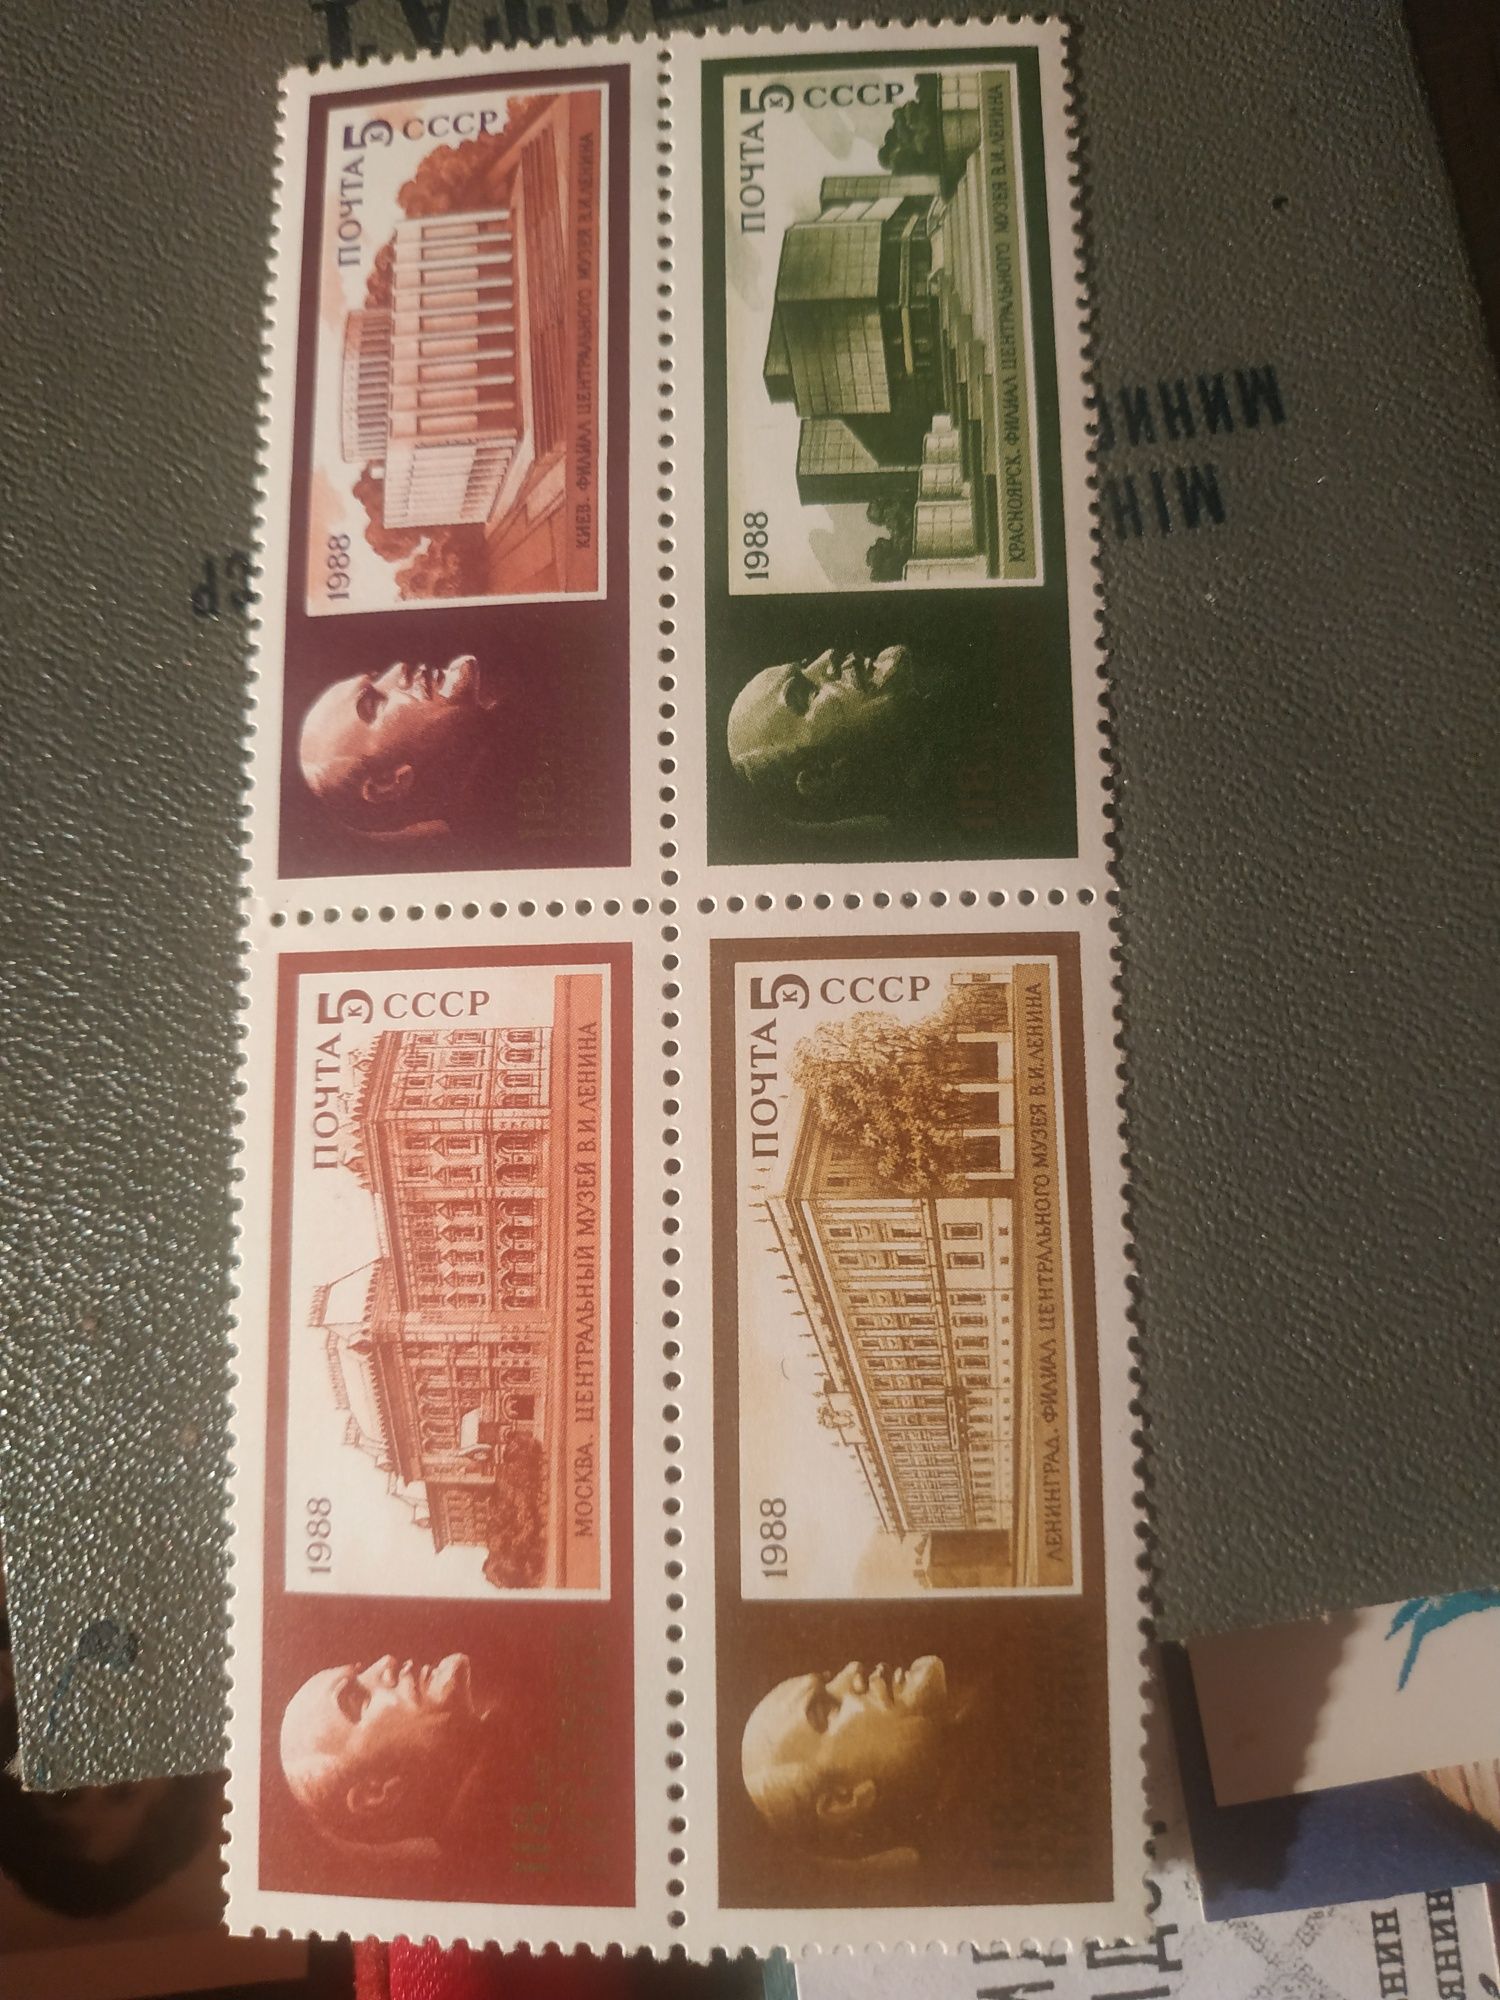 Почтовая марка.Изображены музеи Ленина в разных городах.